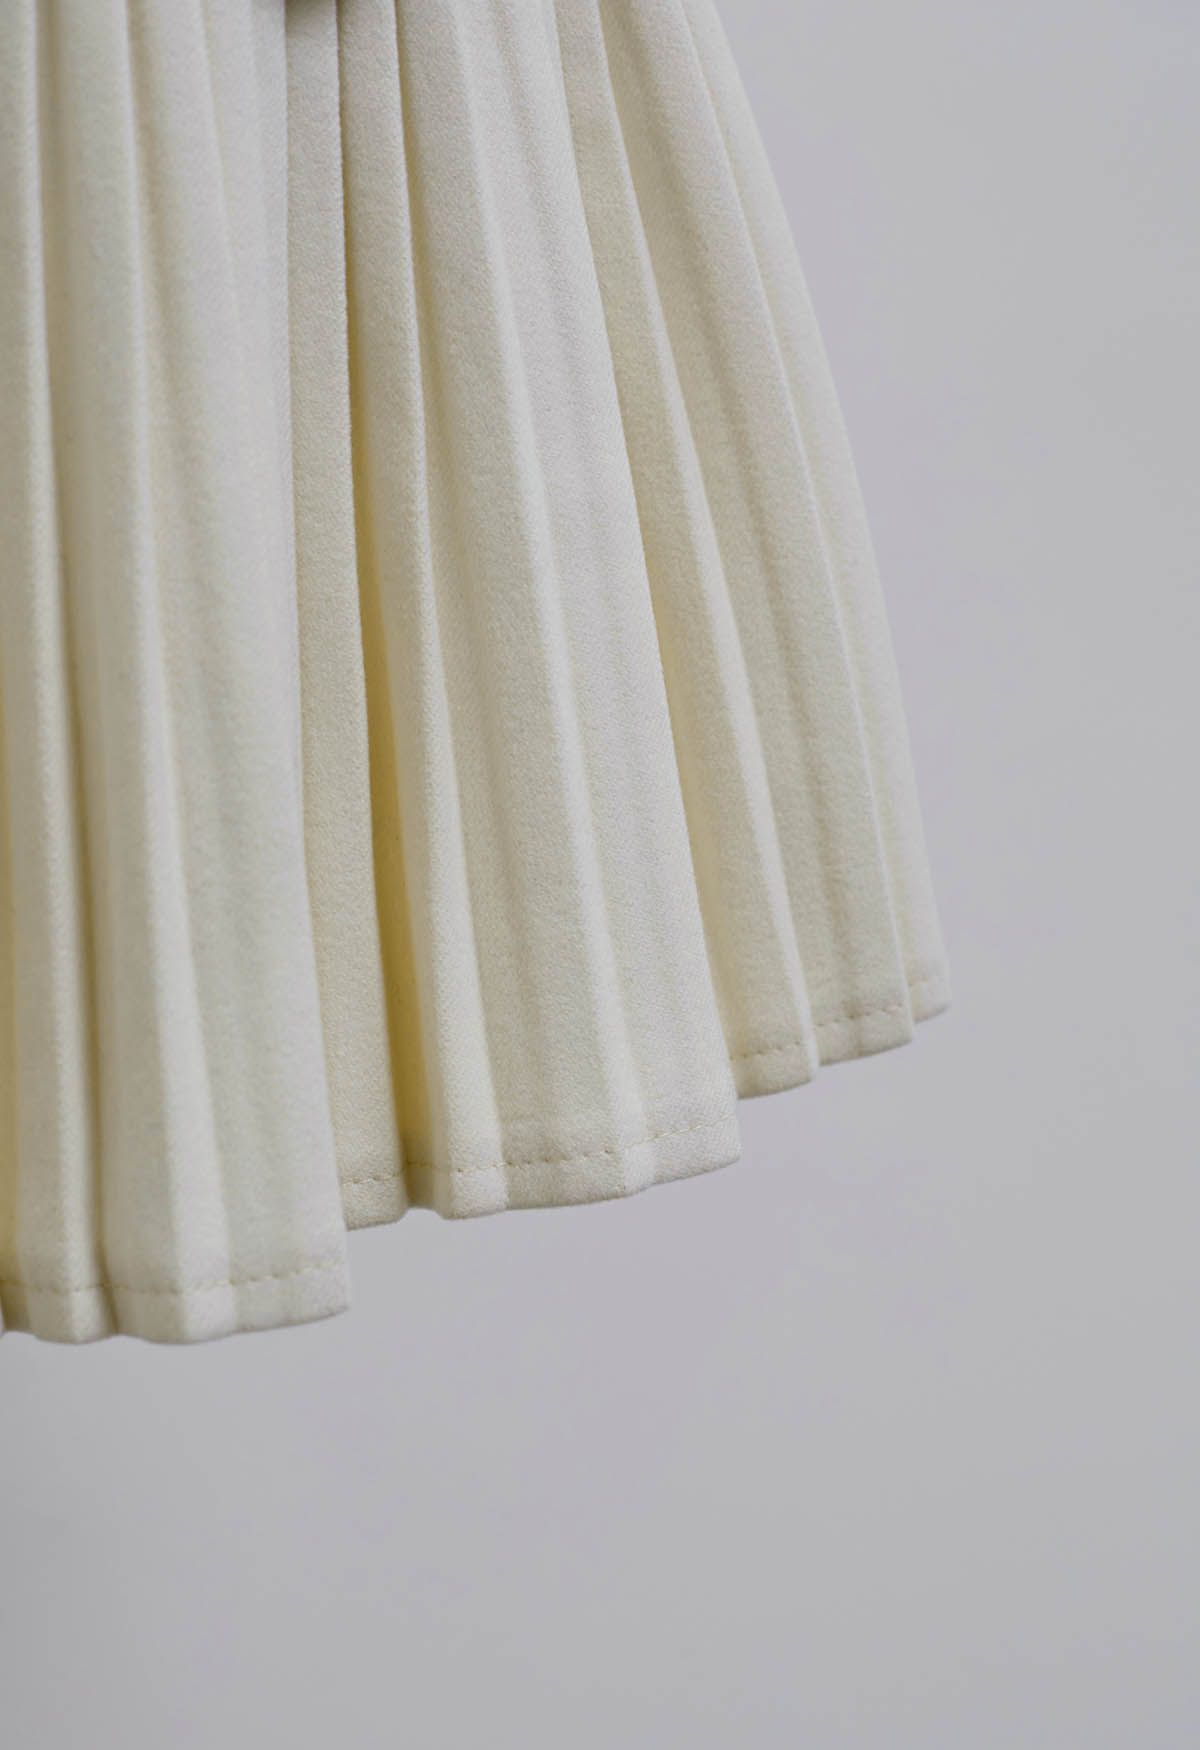 Minifalda plisada con cristales deslumbrantes en blanco